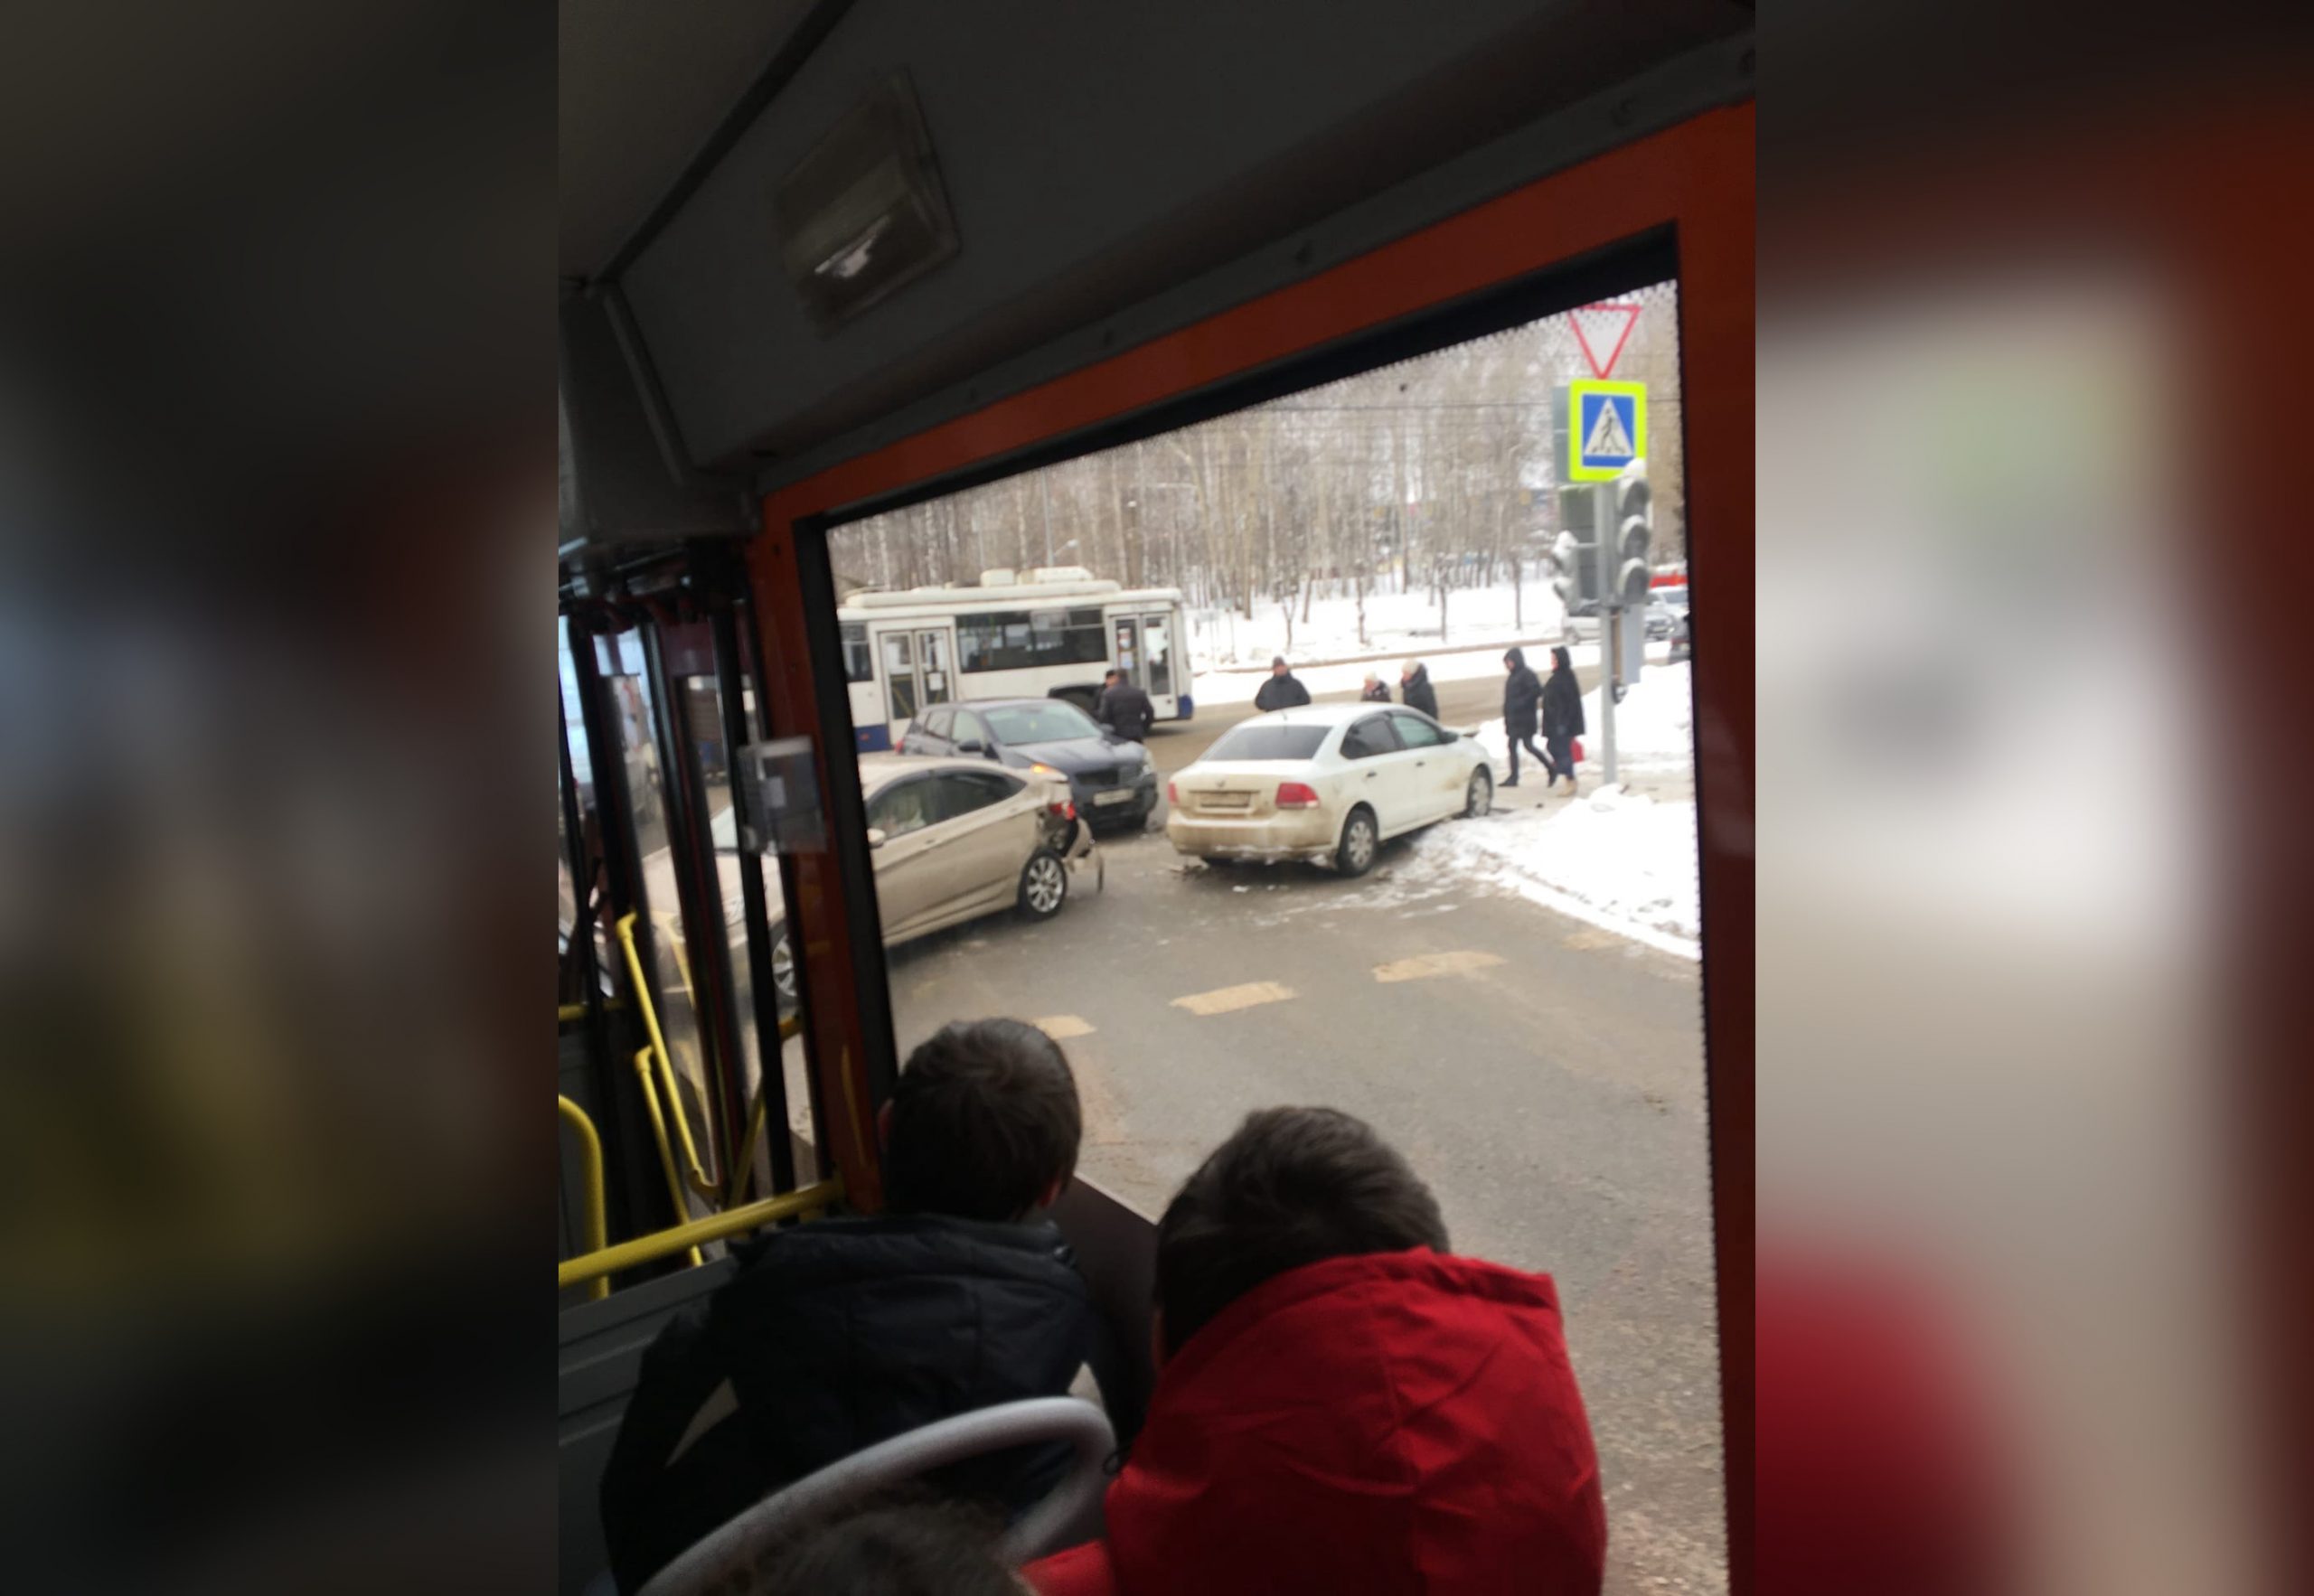 Аварийный перекресток: в Кирове у цирка вновь произошло массовое ДТП с пострадавшими